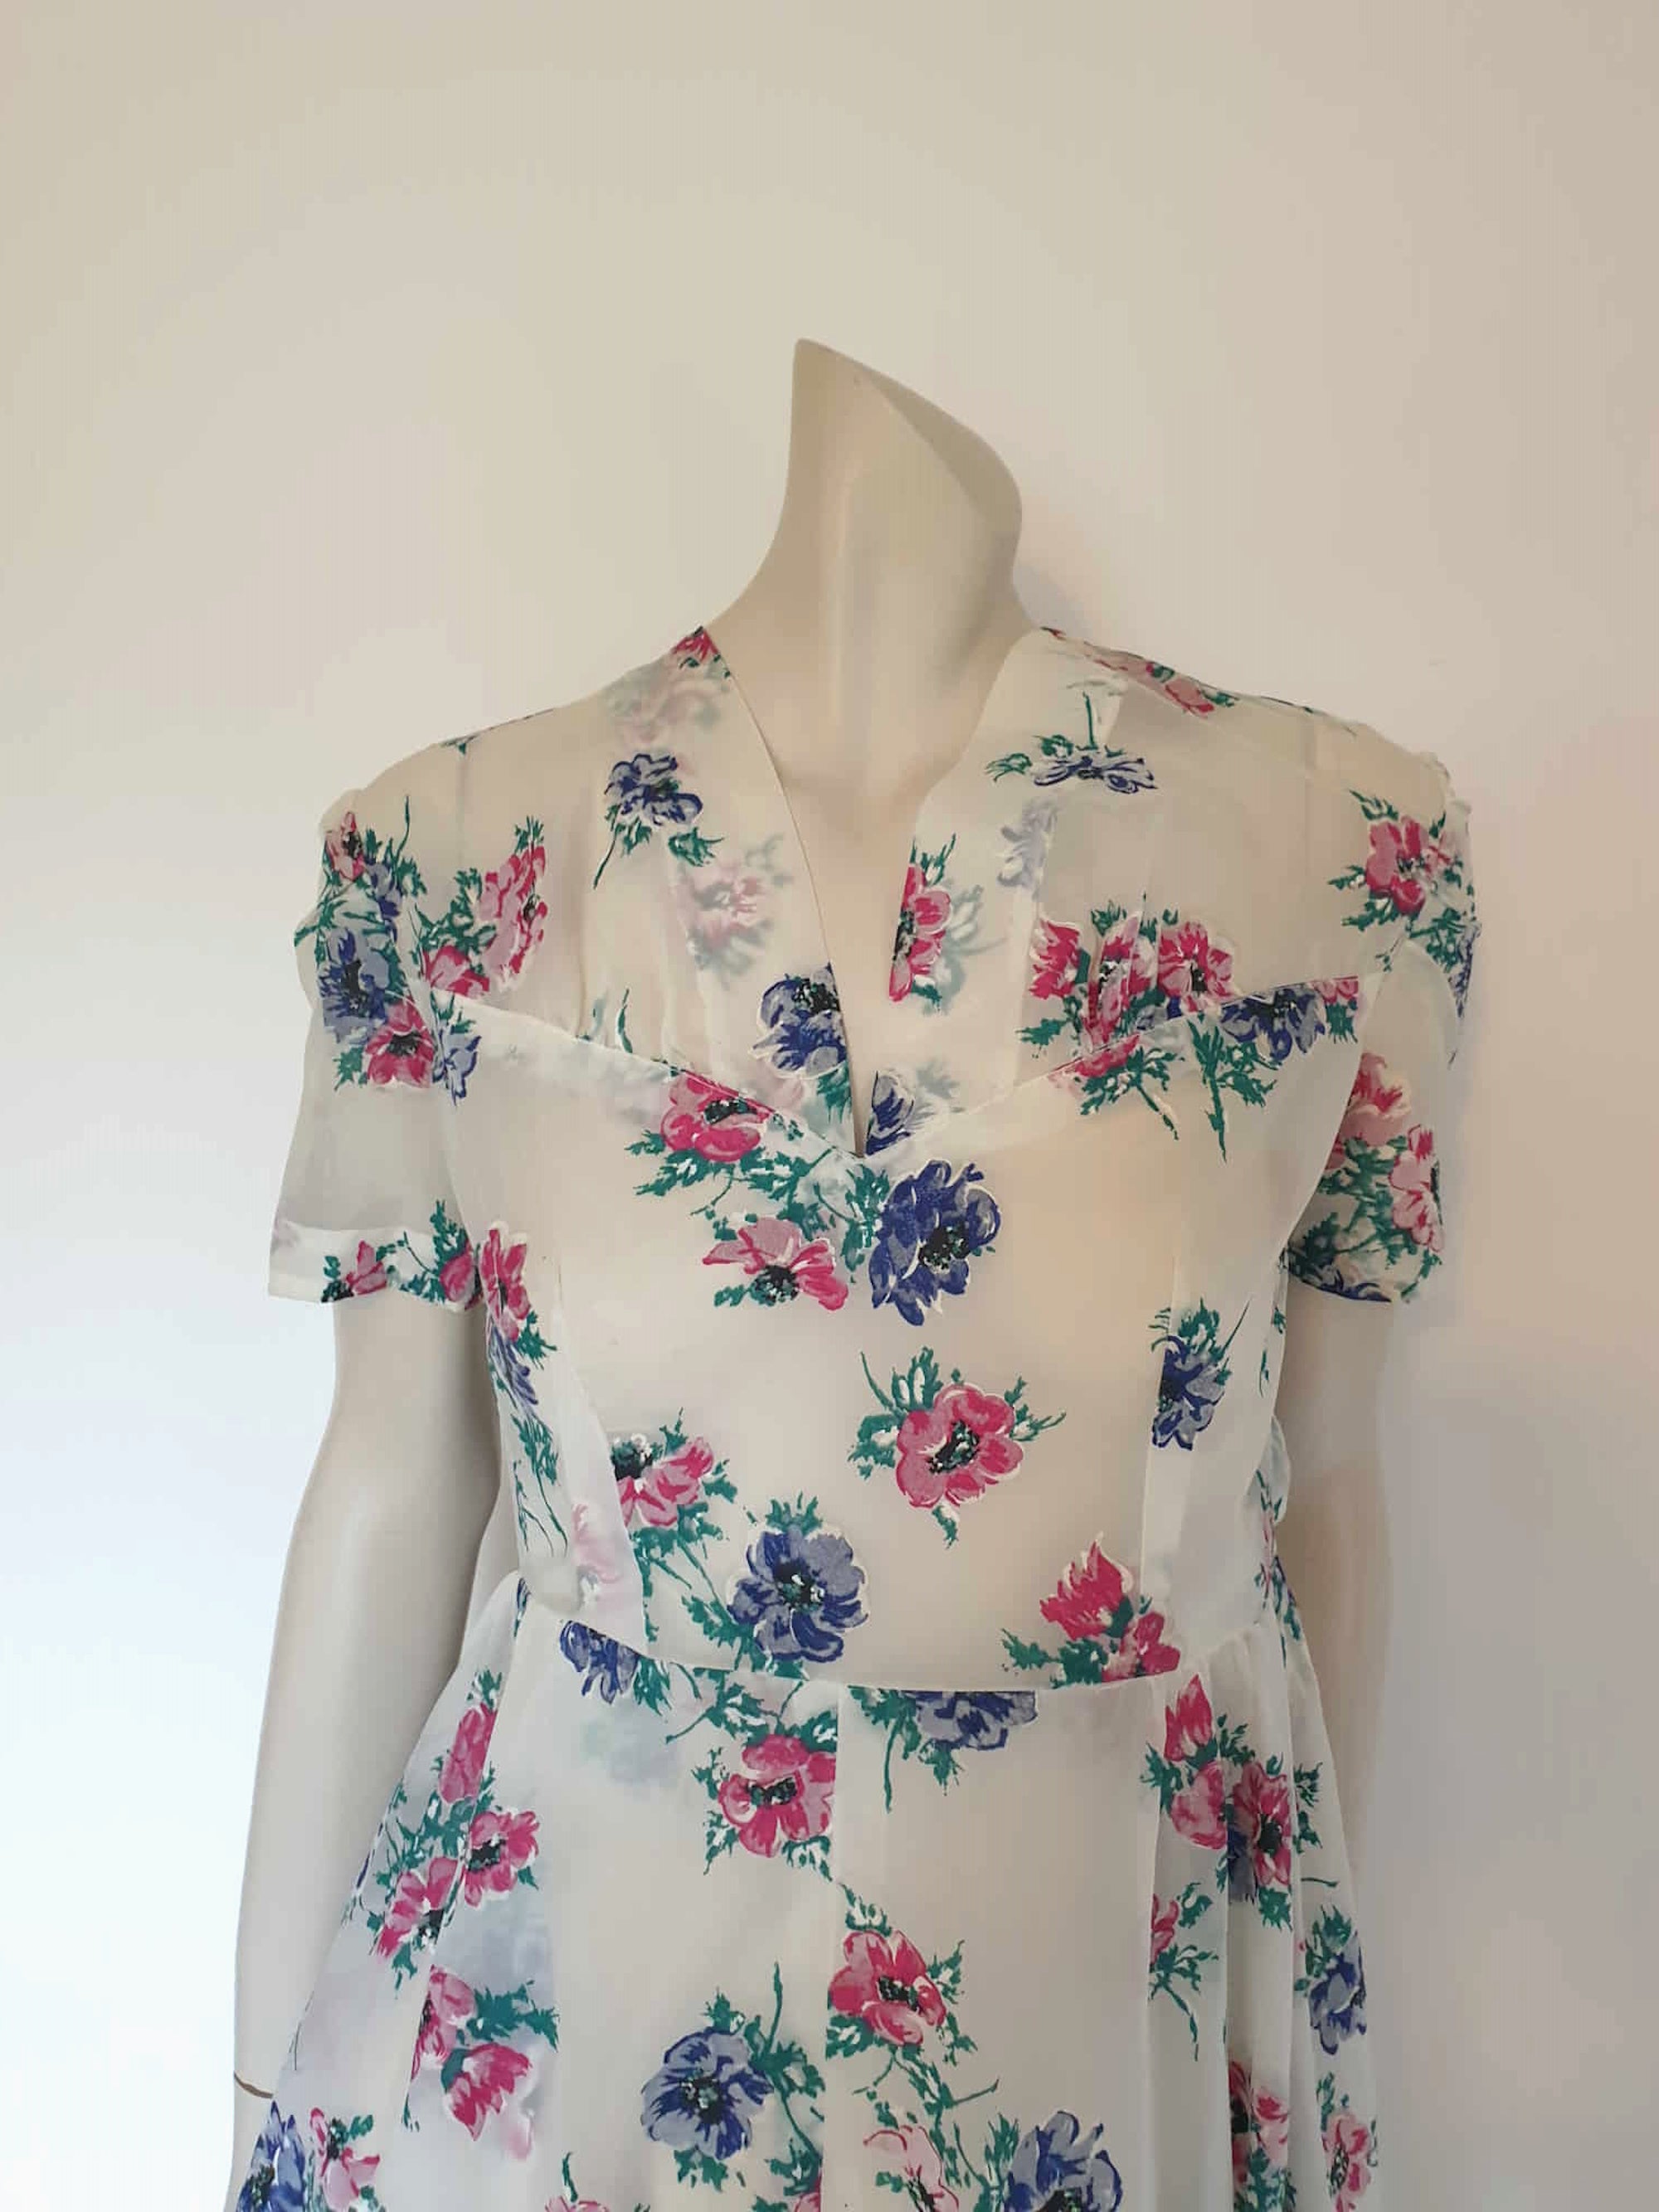 1950s vintage sheer flocked floral fit and flare dress 